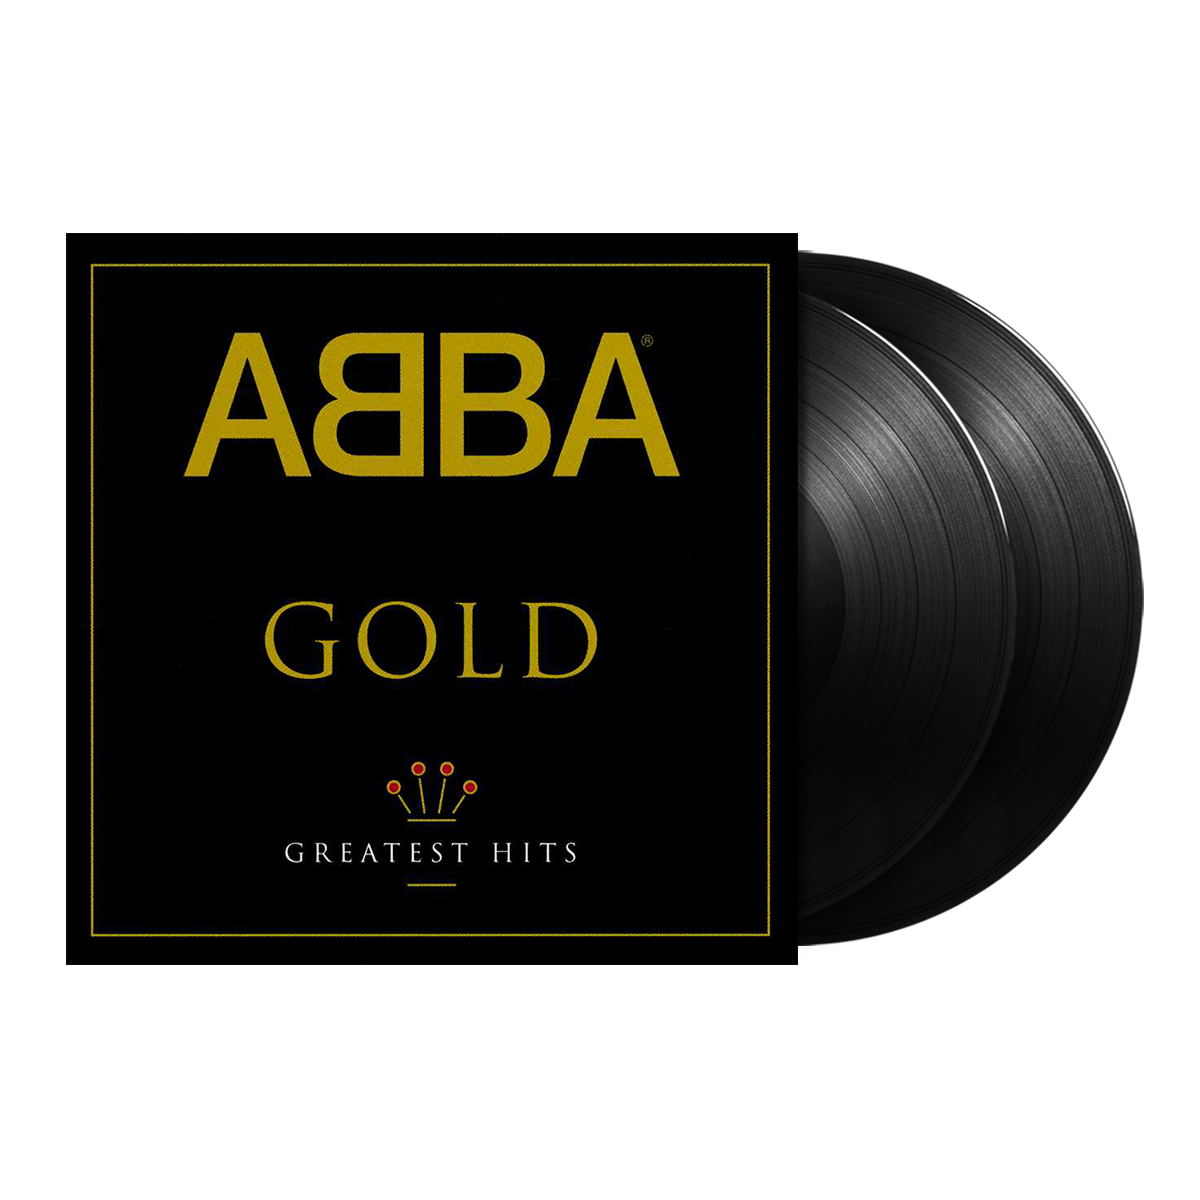 ABBA - Gold Vinilo 2LP